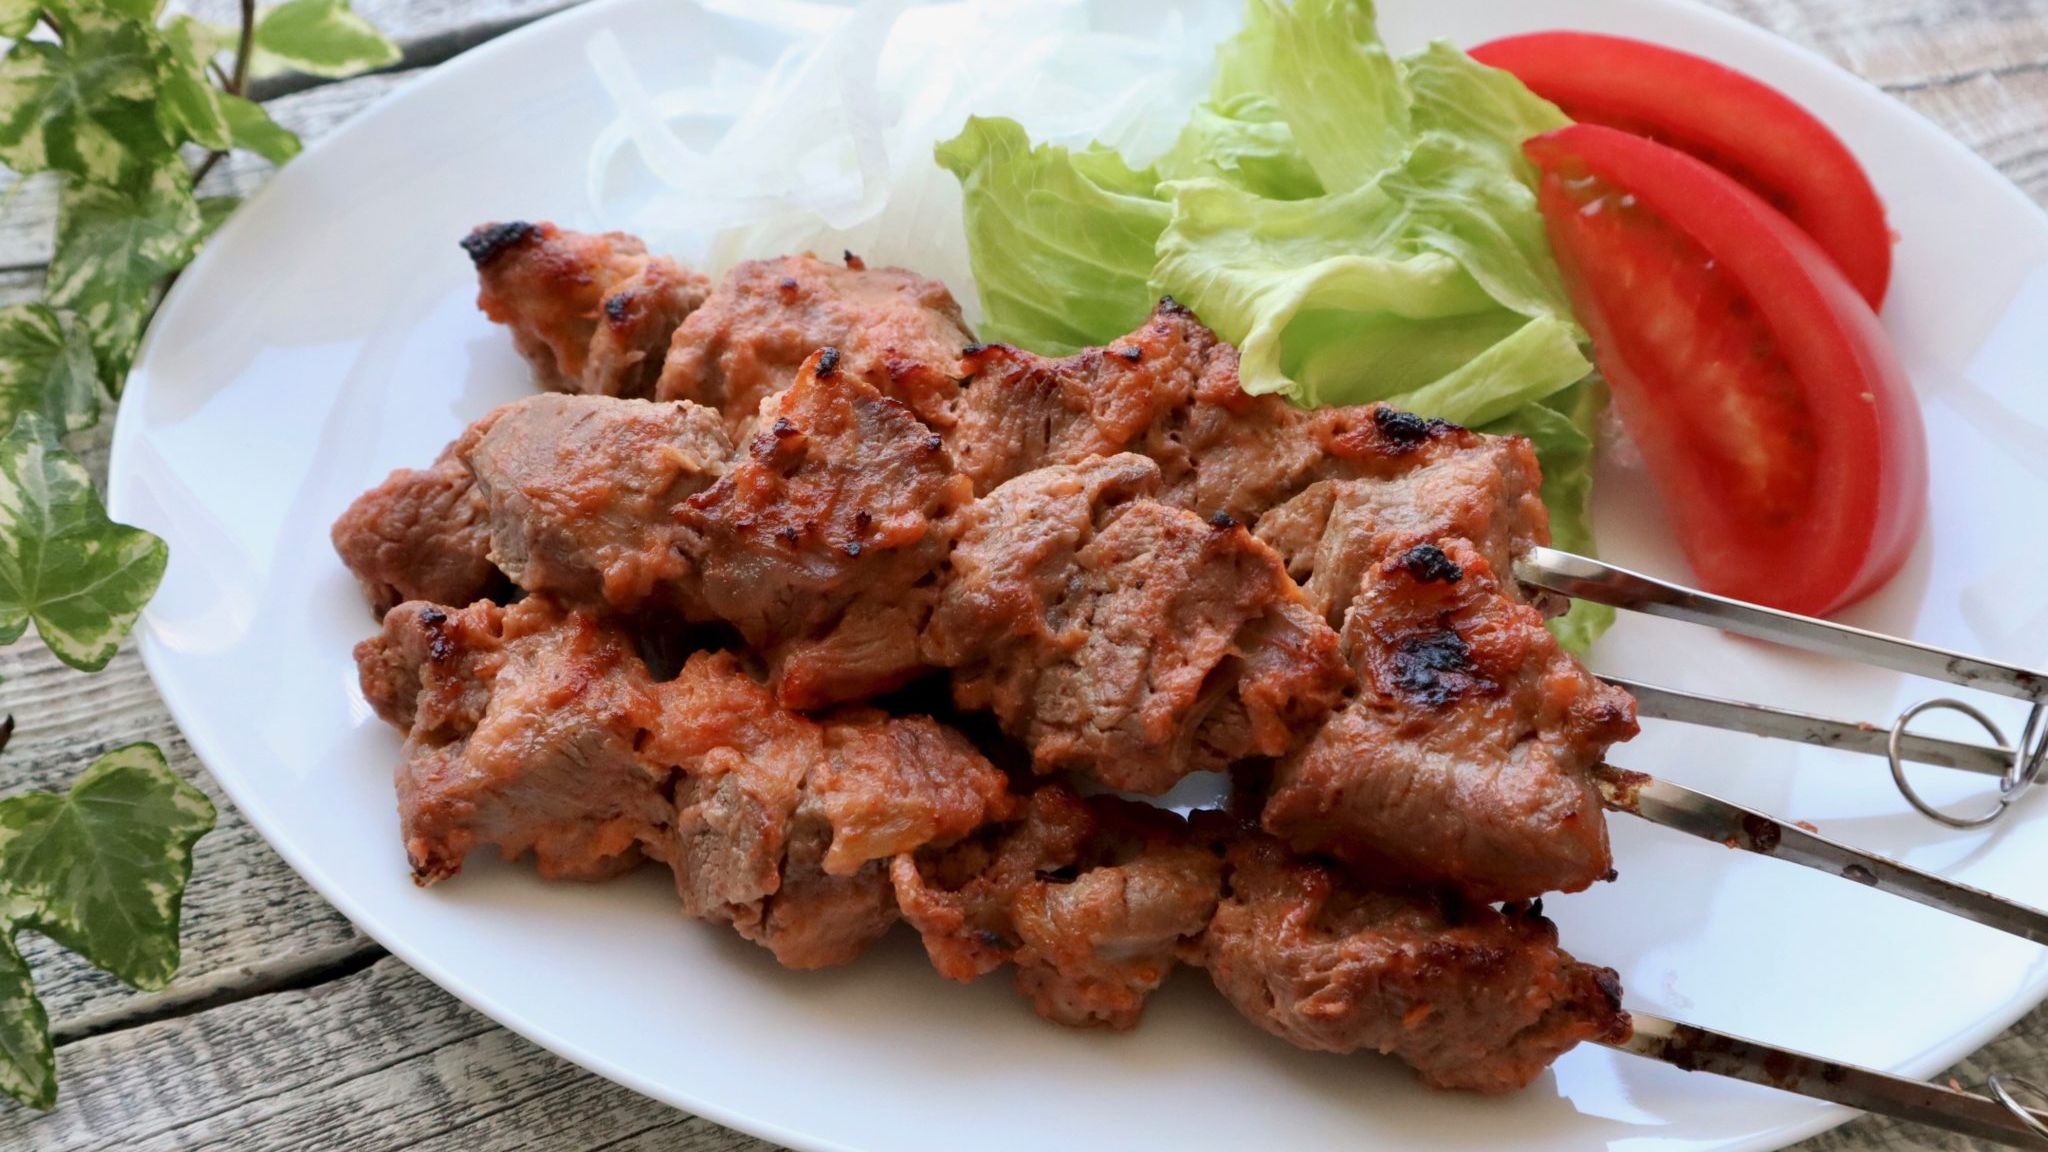 シシカバブの本格レシピ トルコの人気肉料理 ケバブの作り方と食べ方 やまでら くみこ のレシピ